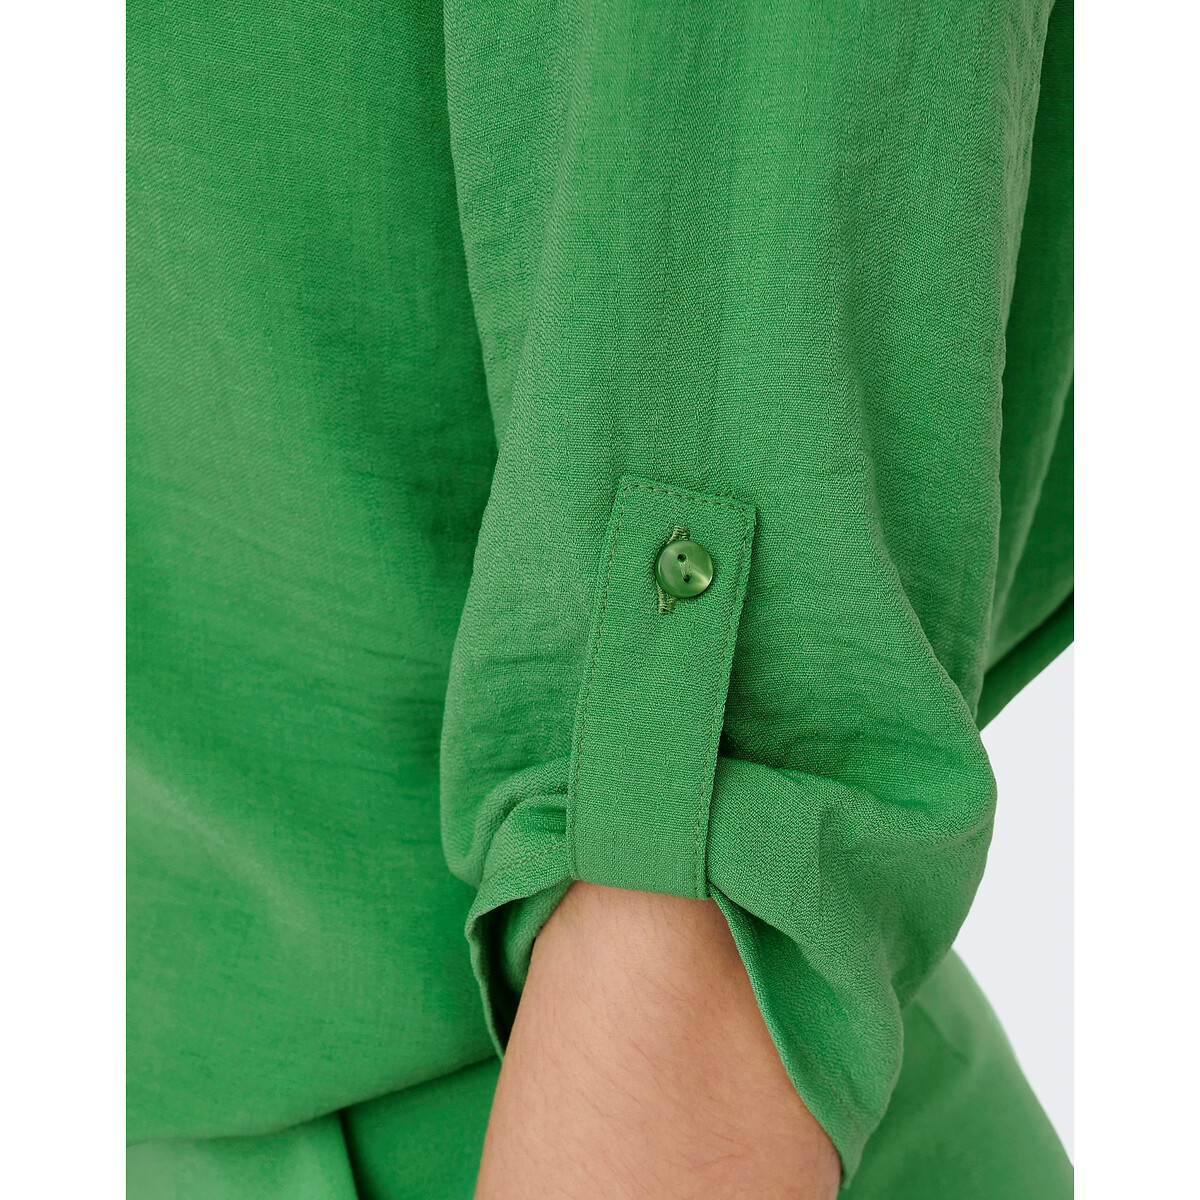 Блузка С рукавами 34 и V-образным вырезом 38 (FR) - 44 (RUS) зеленый LaRedoute, размер 38 (FR) - 44 (RUS) Блузка С рукавами 34 и V-образным вырезом 38 (FR) - 44 (RUS) зеленый - фото 3